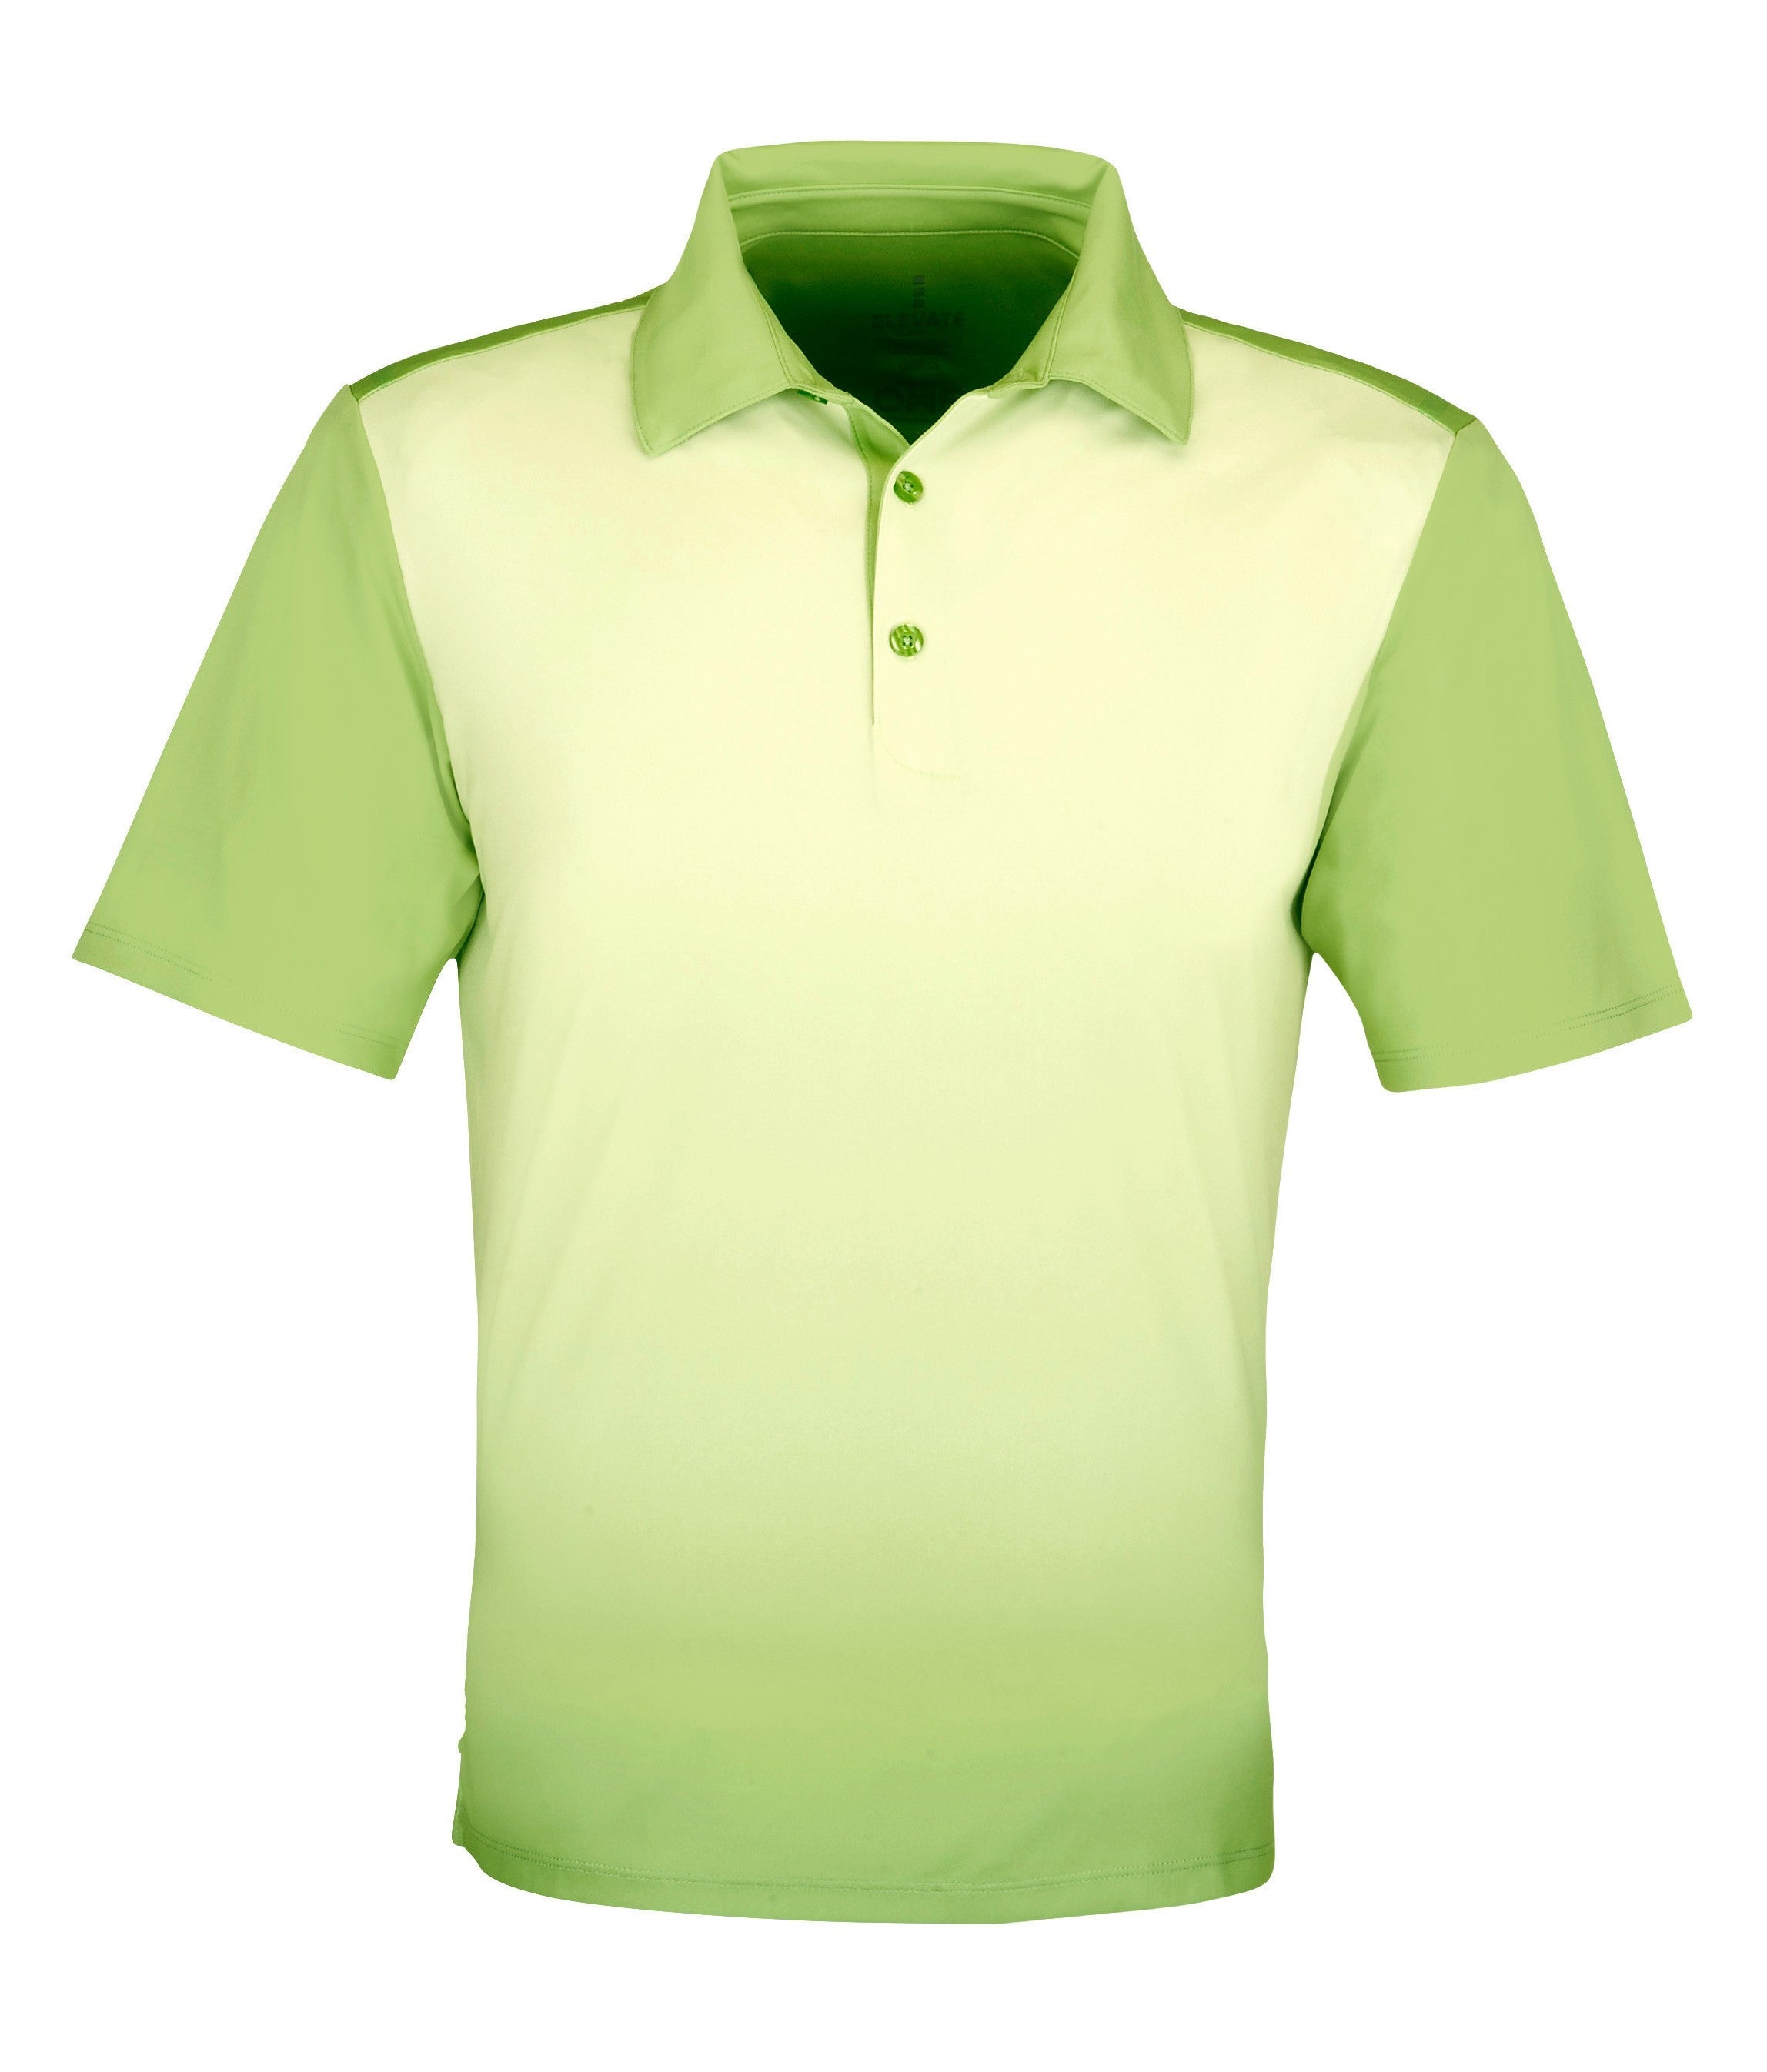 Mens Next Golf Shirt - Light Blue Only-L-Lime-L